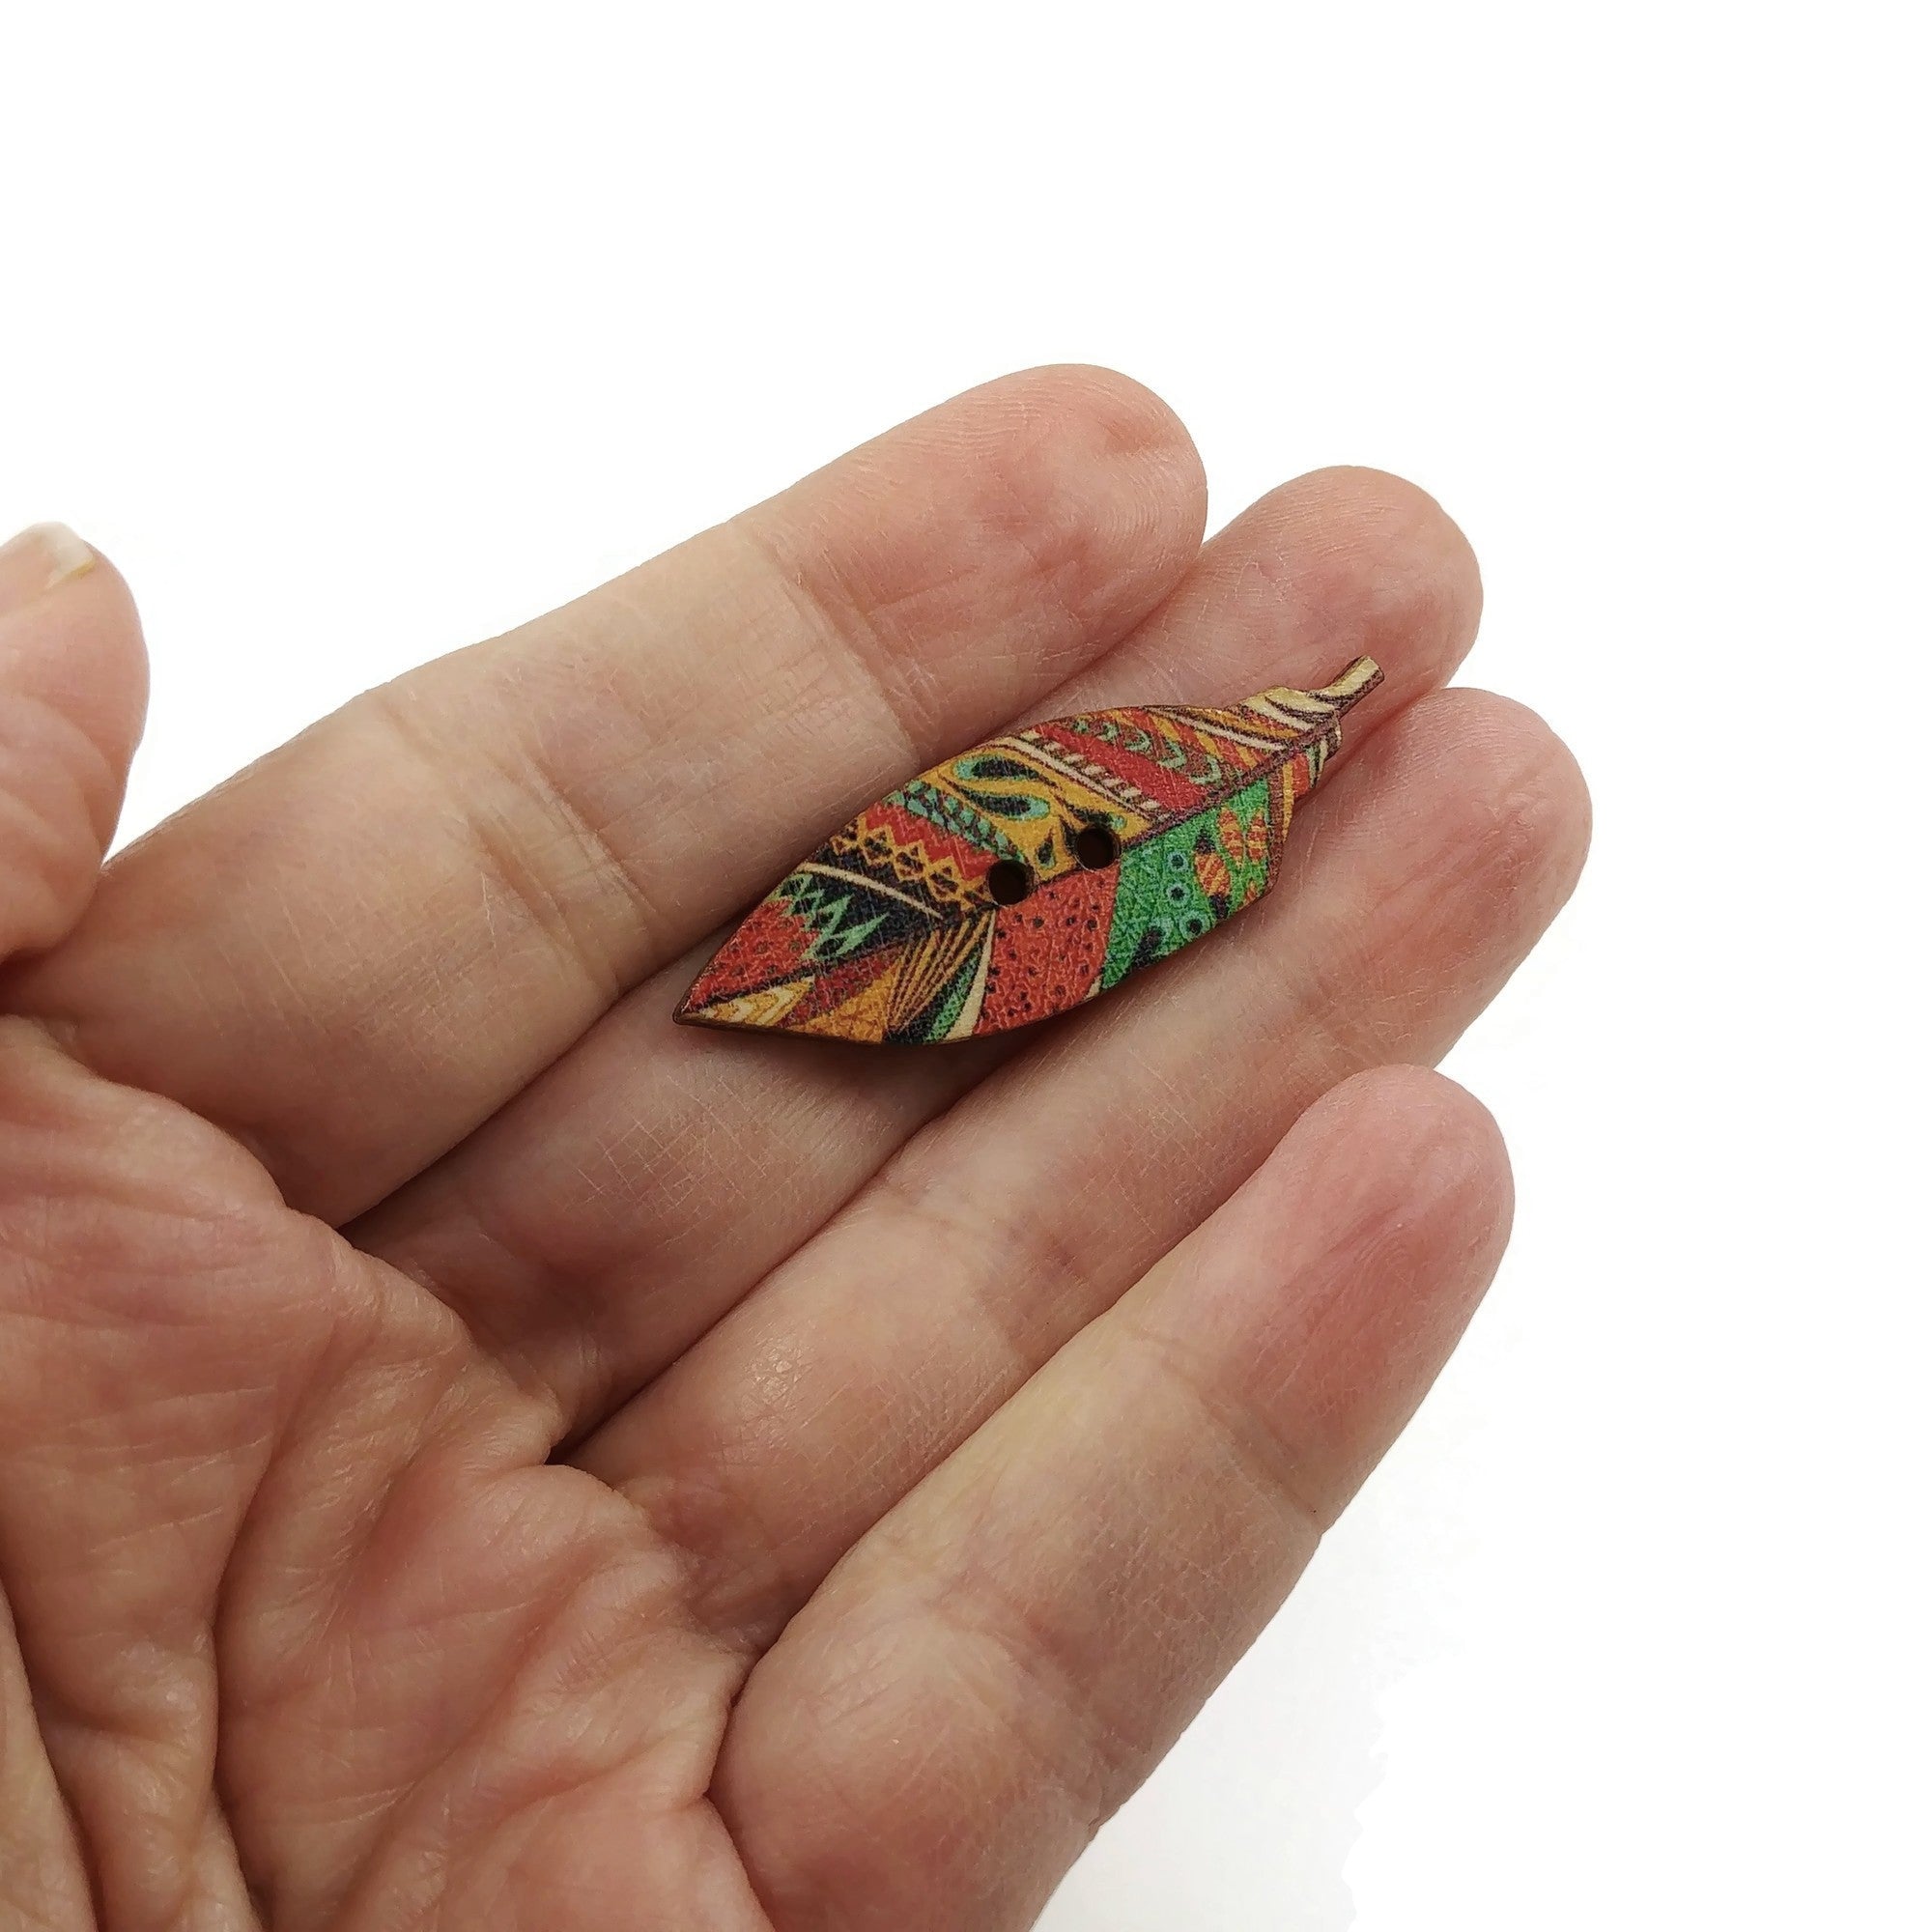 6 Boutons plumes indiennes couleurs variées - lot de boutons en bois 40mm